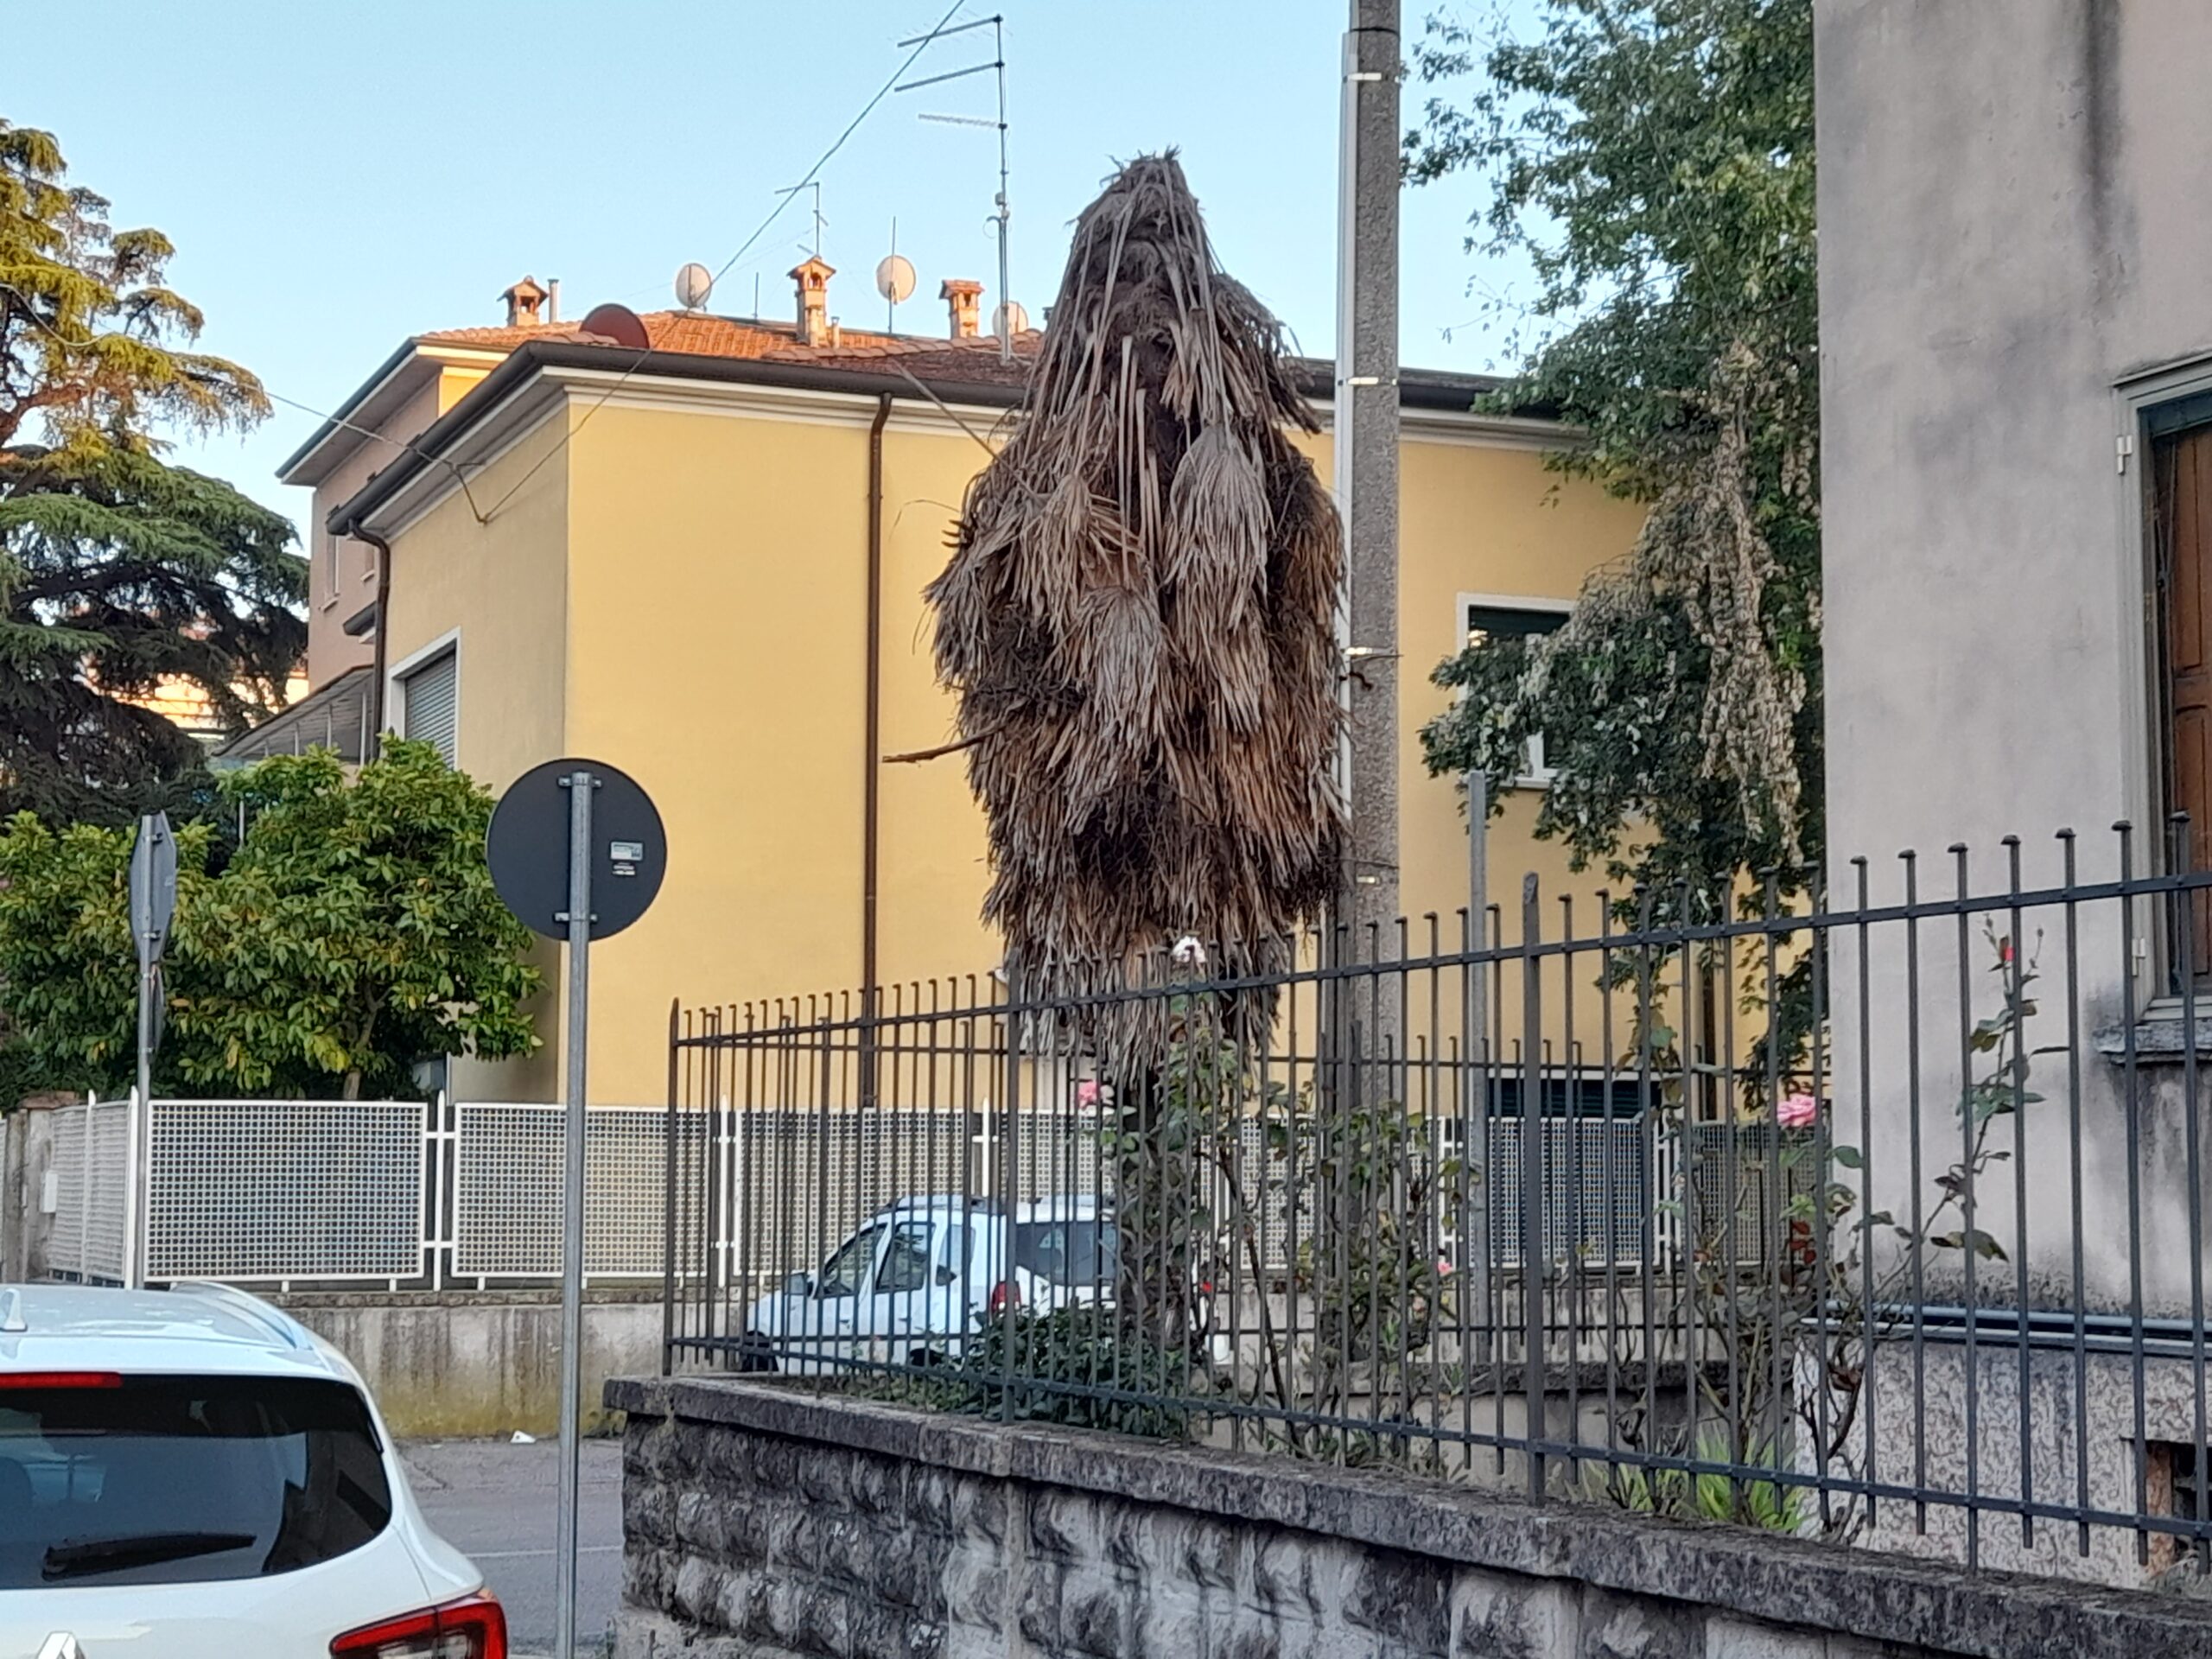 Il castnide delle palme invade Verona